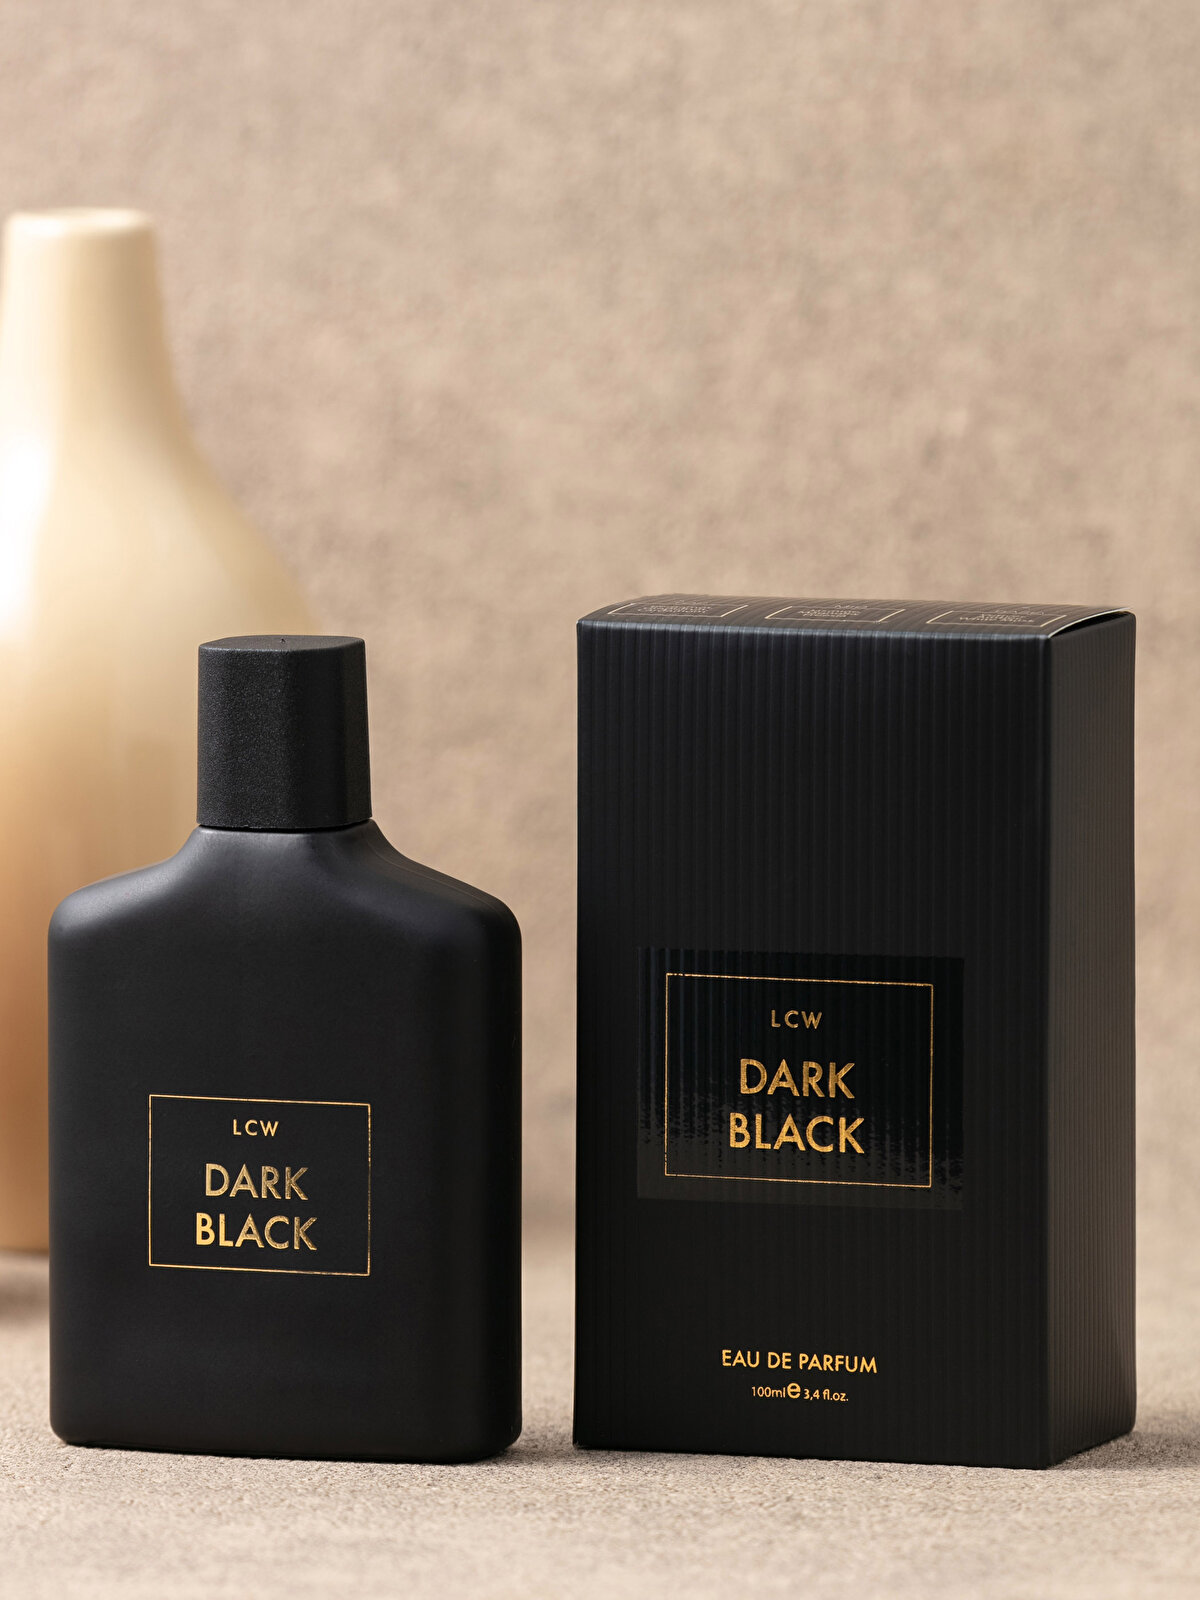 LCW Dark Black EDP Men's Perfume 100 Ml -S25418Z8-M0T - S25418Z8-M0T ...